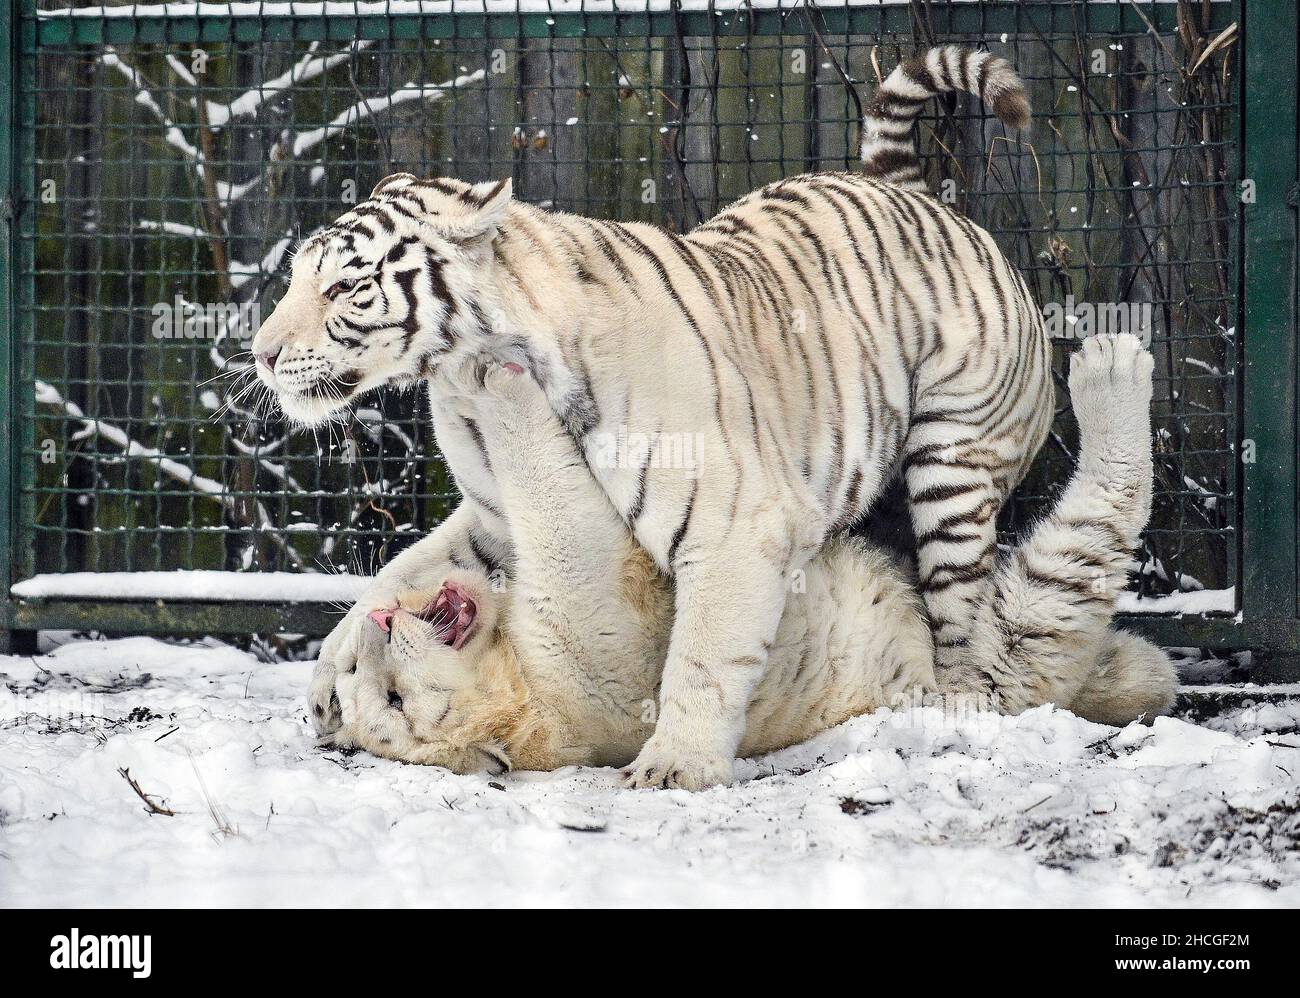 BERDIANSK, UKRAINE - 27 DÉCEMBRE 2021 - deux tigres blancs jouent dans la neige dans un zoo, Berdiansk, région de Zaporizhzhia, sud-est de l'Ukraine. Banque D'Images